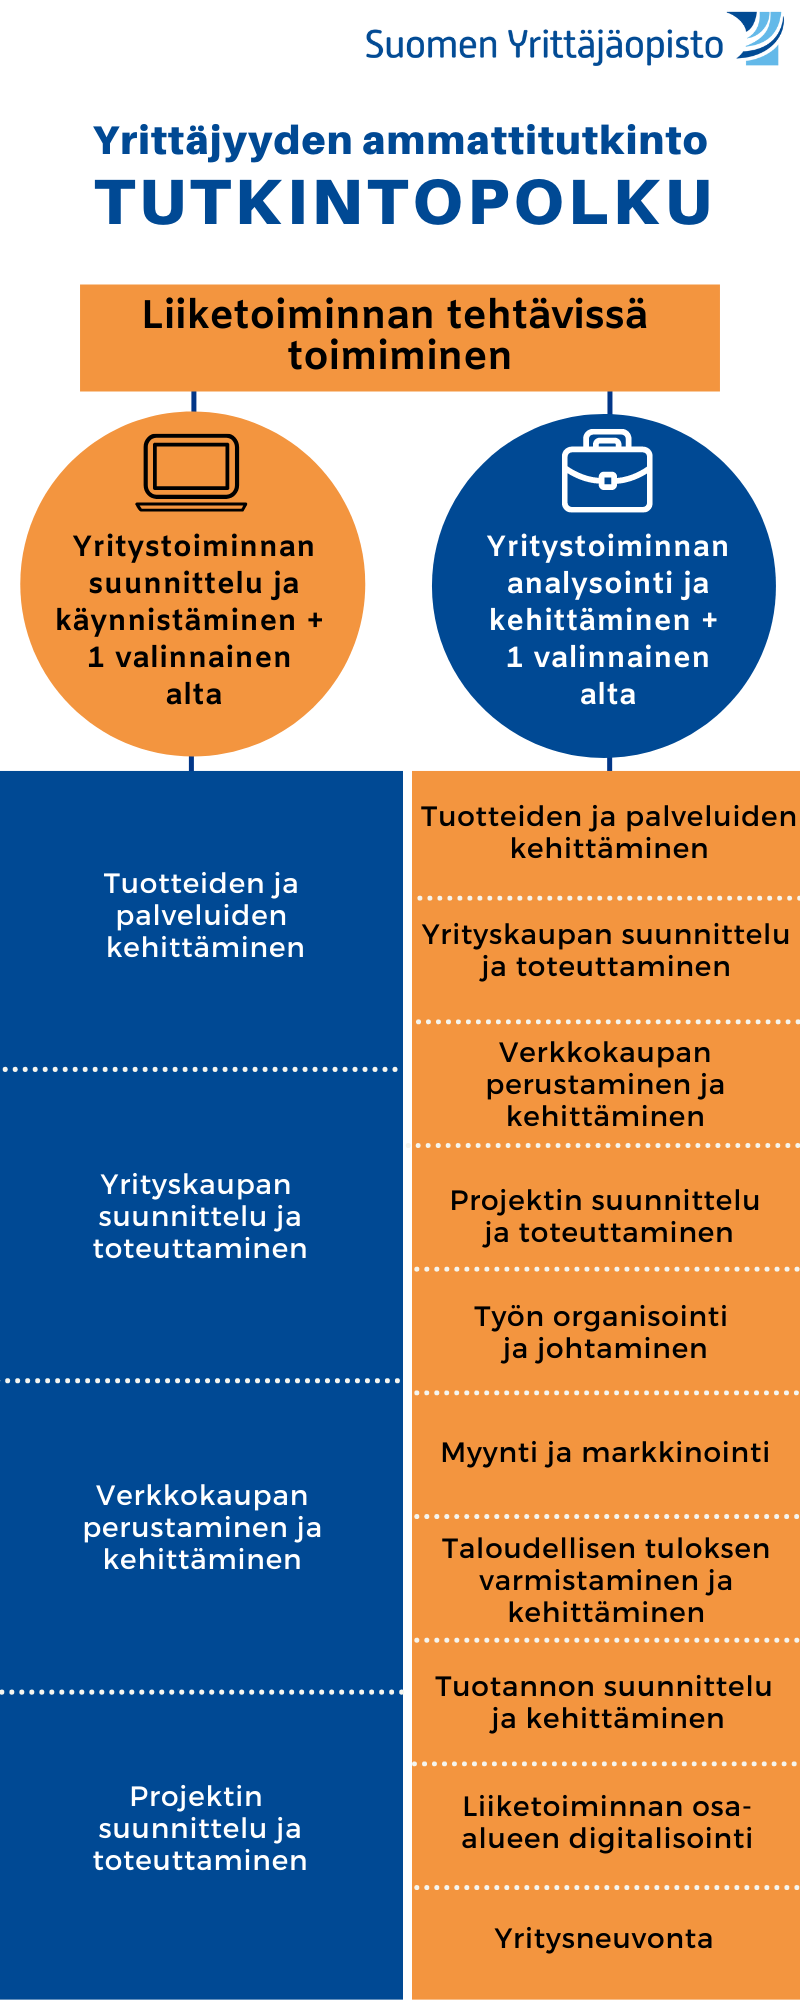 Yrittäjyyskoulutus verkossa ja lähelläsi - Suomen Yrittäjäopisto